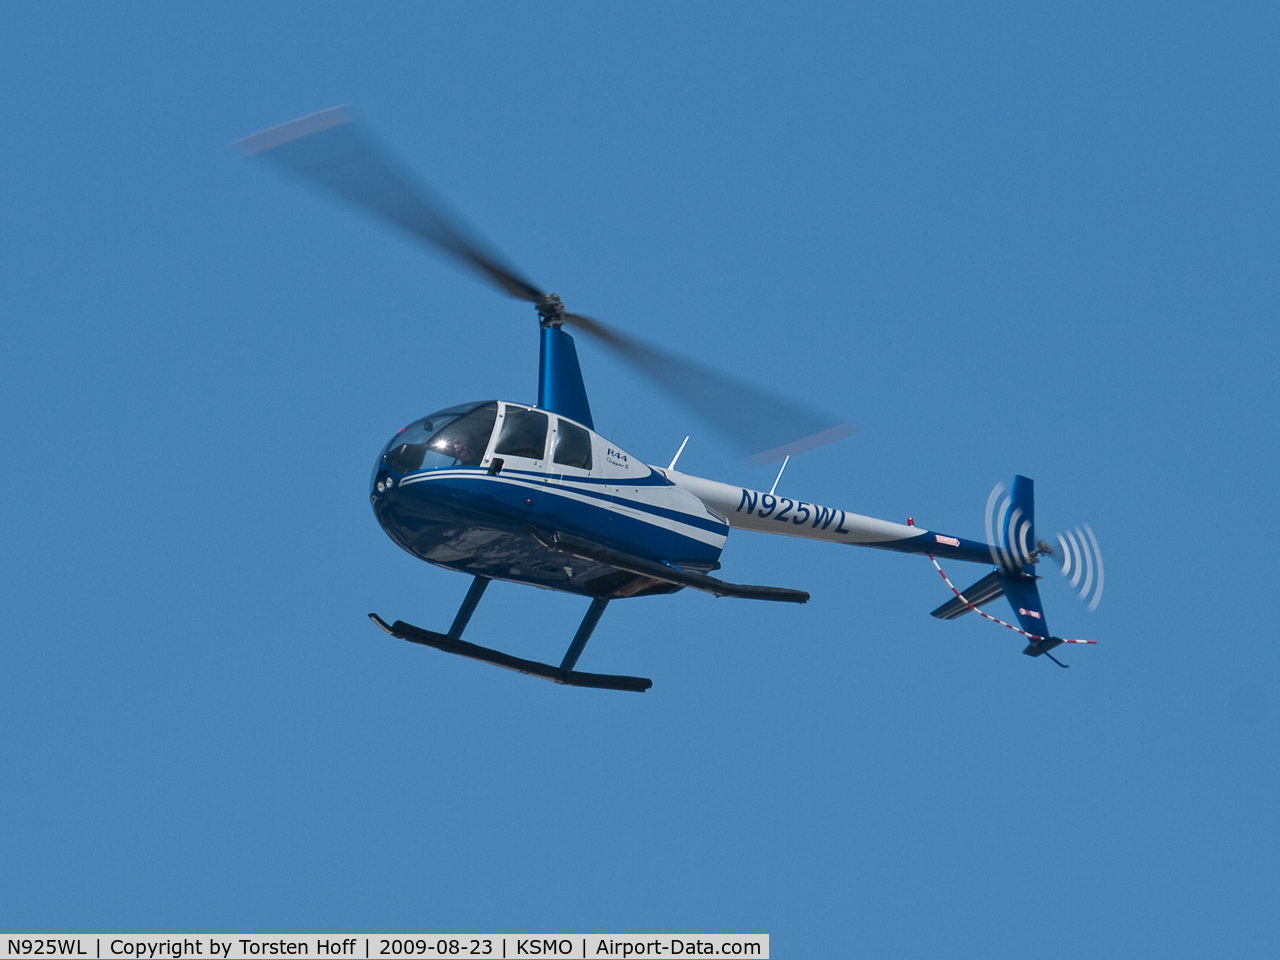 N925WL, 2004 Robinson R44 II C/N 10462, N925WL arriving on RWY 21